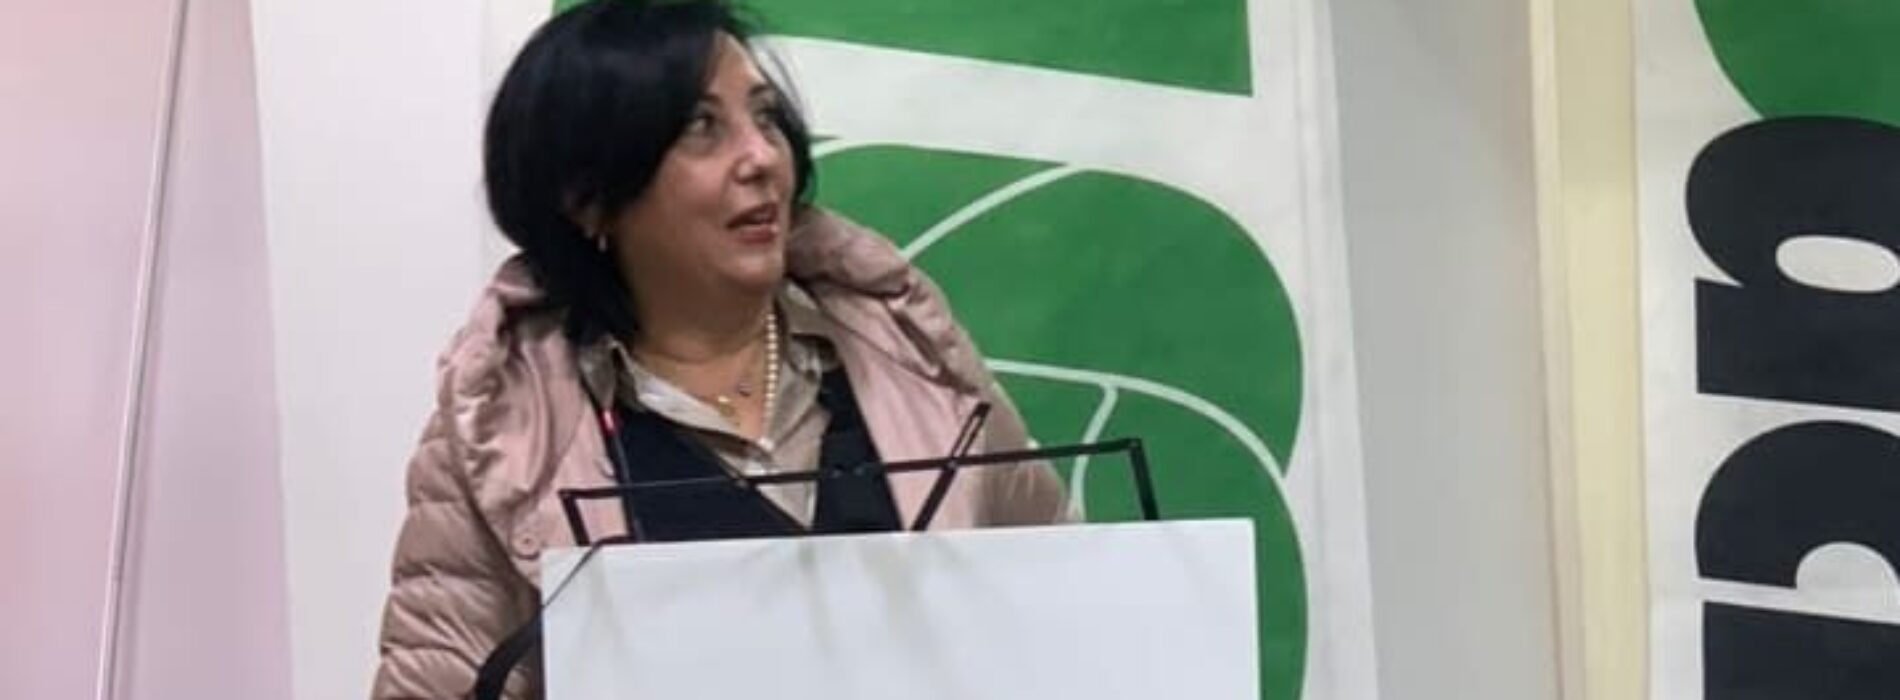 Nuovo presidente regionale per l’UsAcli, è Francesca Dattilo